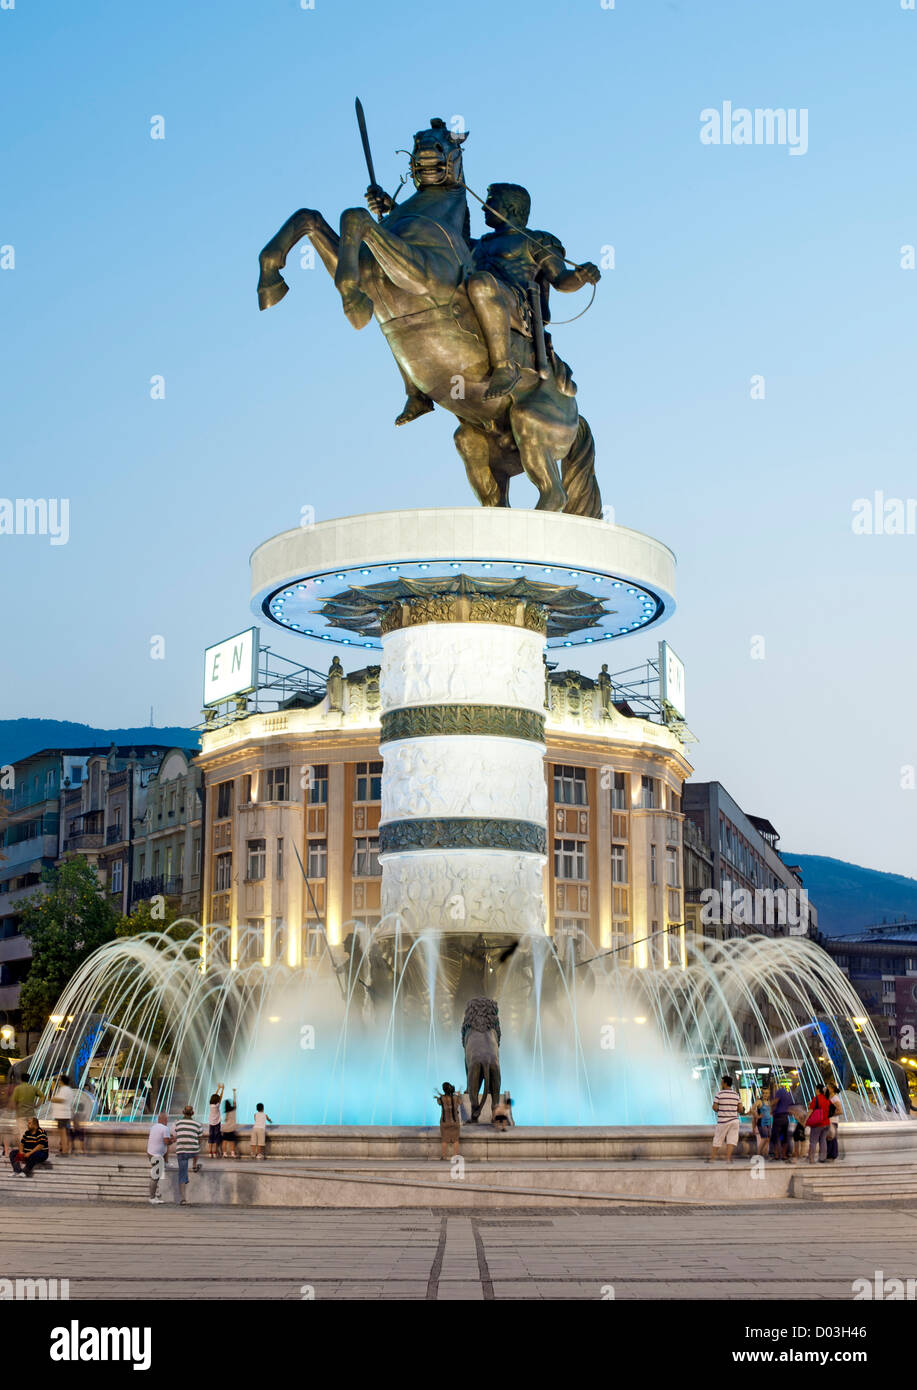 'Guerrier sur un cheval", un 28-mètres de haut fontaine au centre de Skopje, la capitale de la Macédoine. Banque D'Images